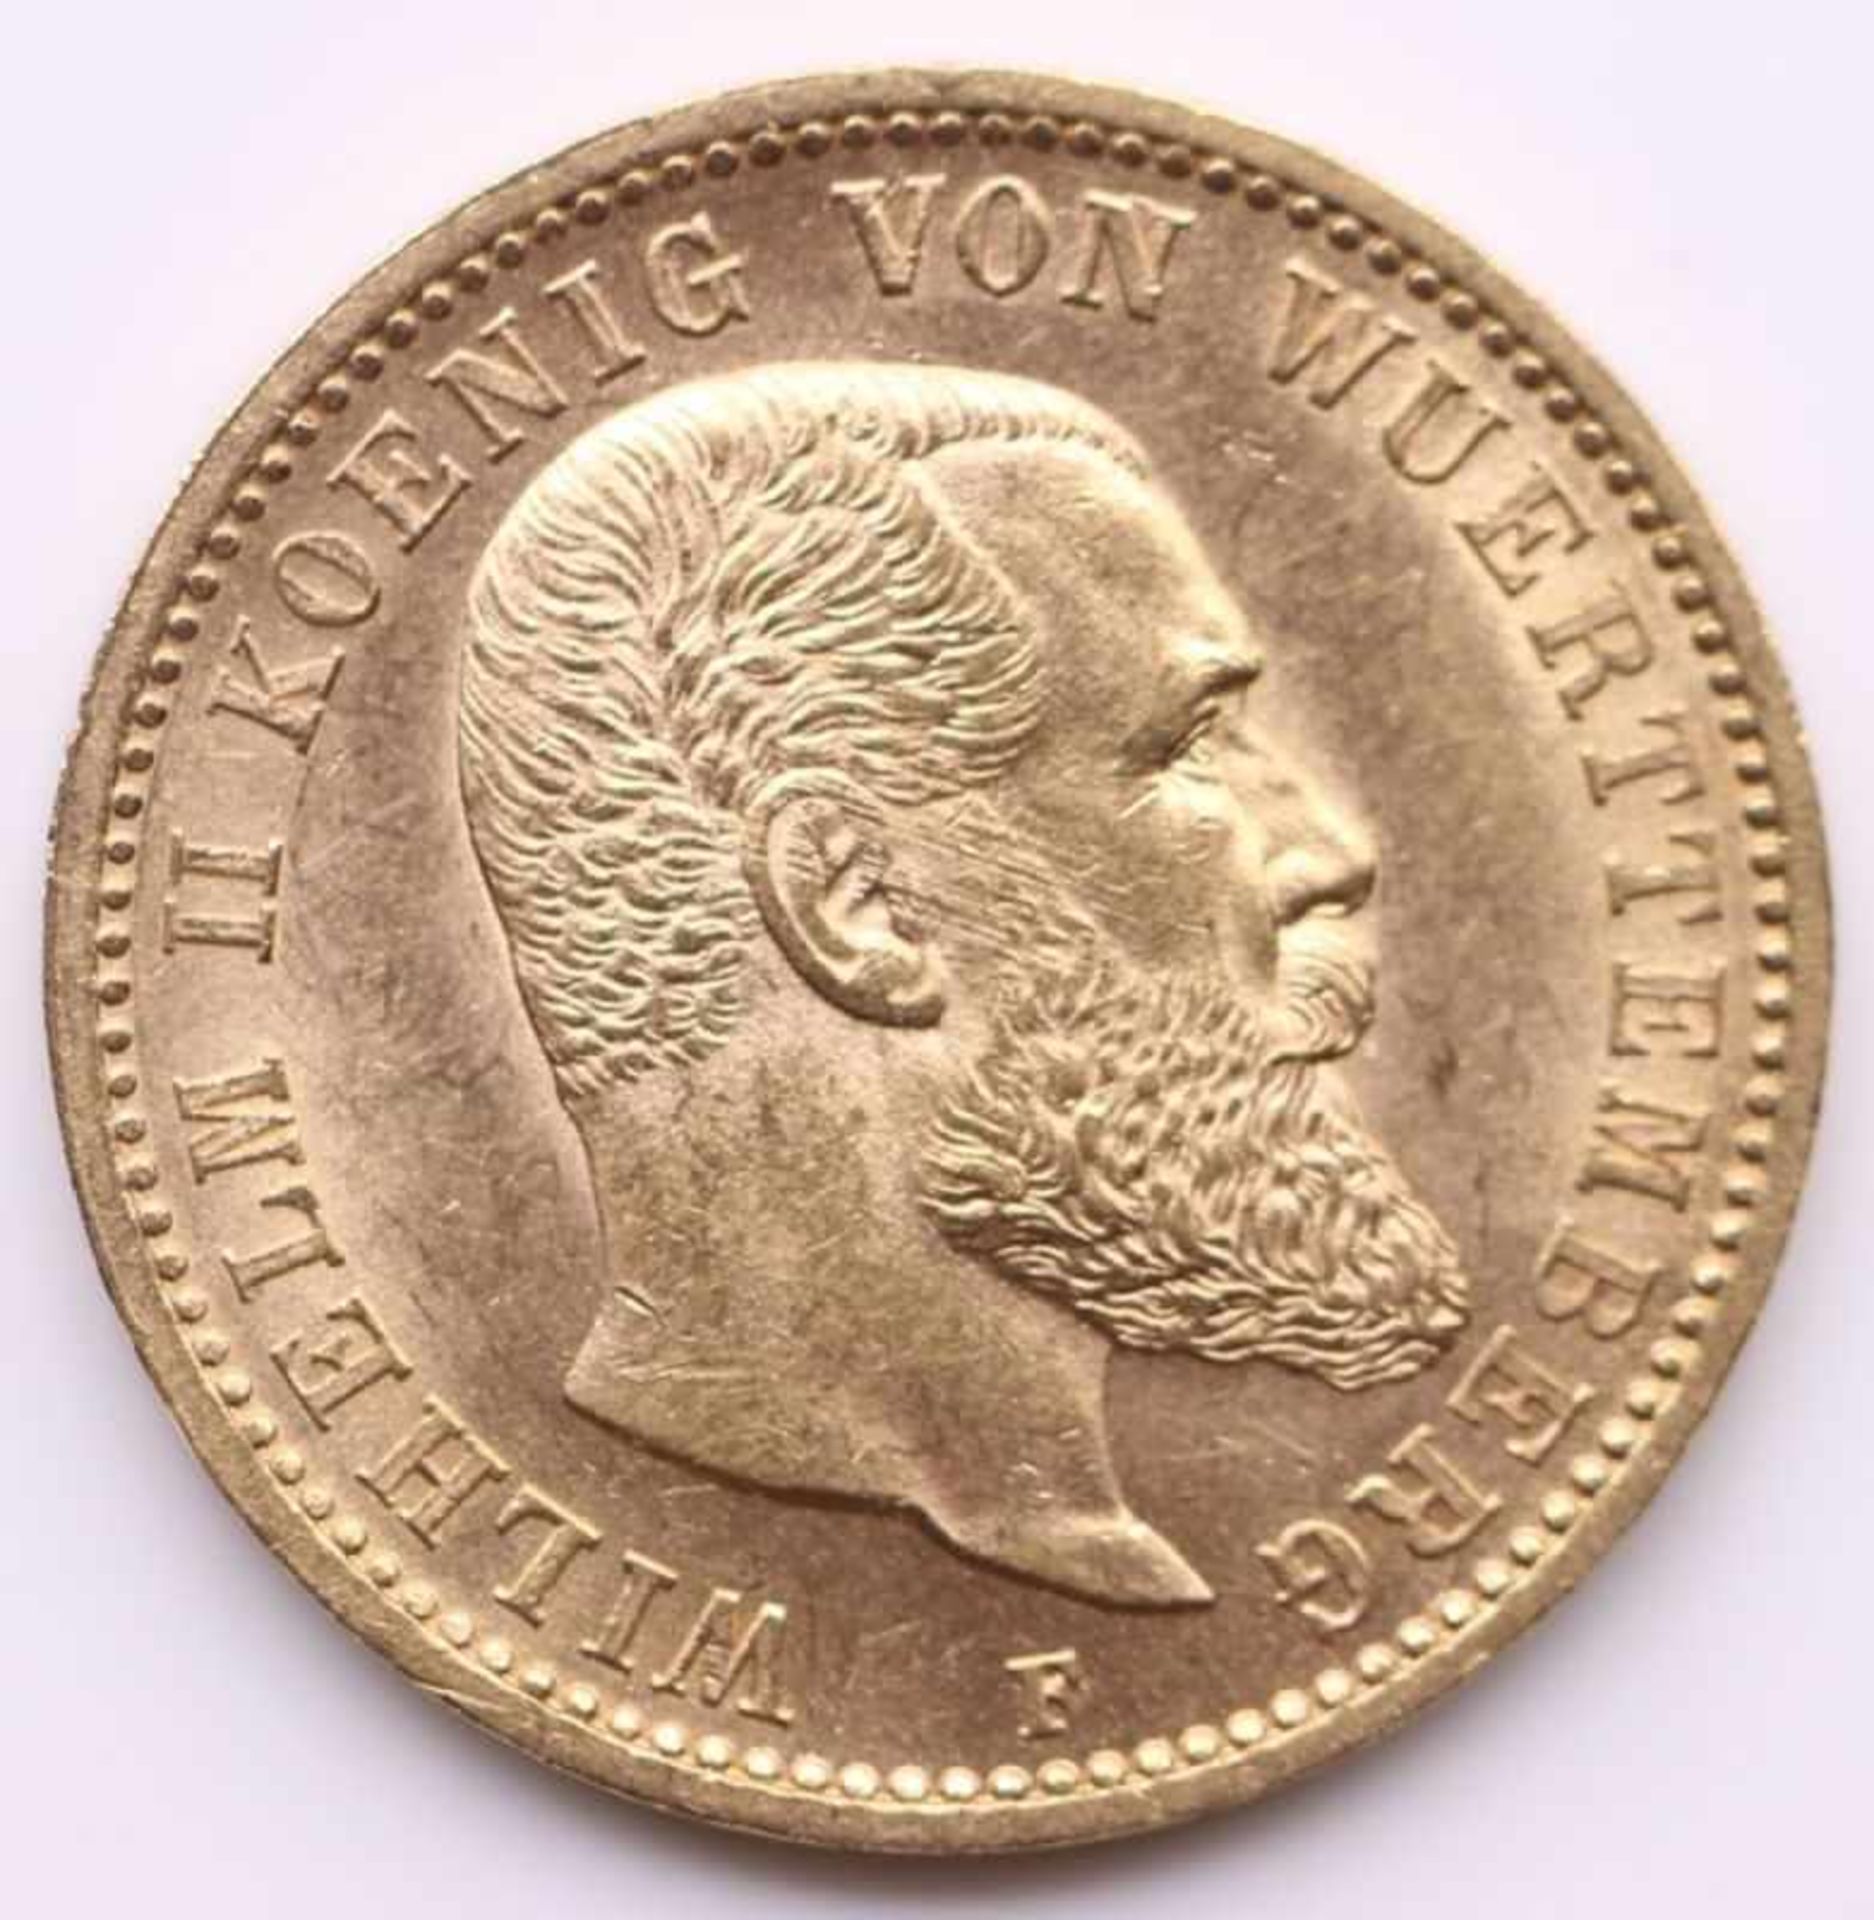 Goldmünze - 20 Mark Deutsches Reich 1900 F, Wilhelm II. König von Württemberg, 7,96 Gramm